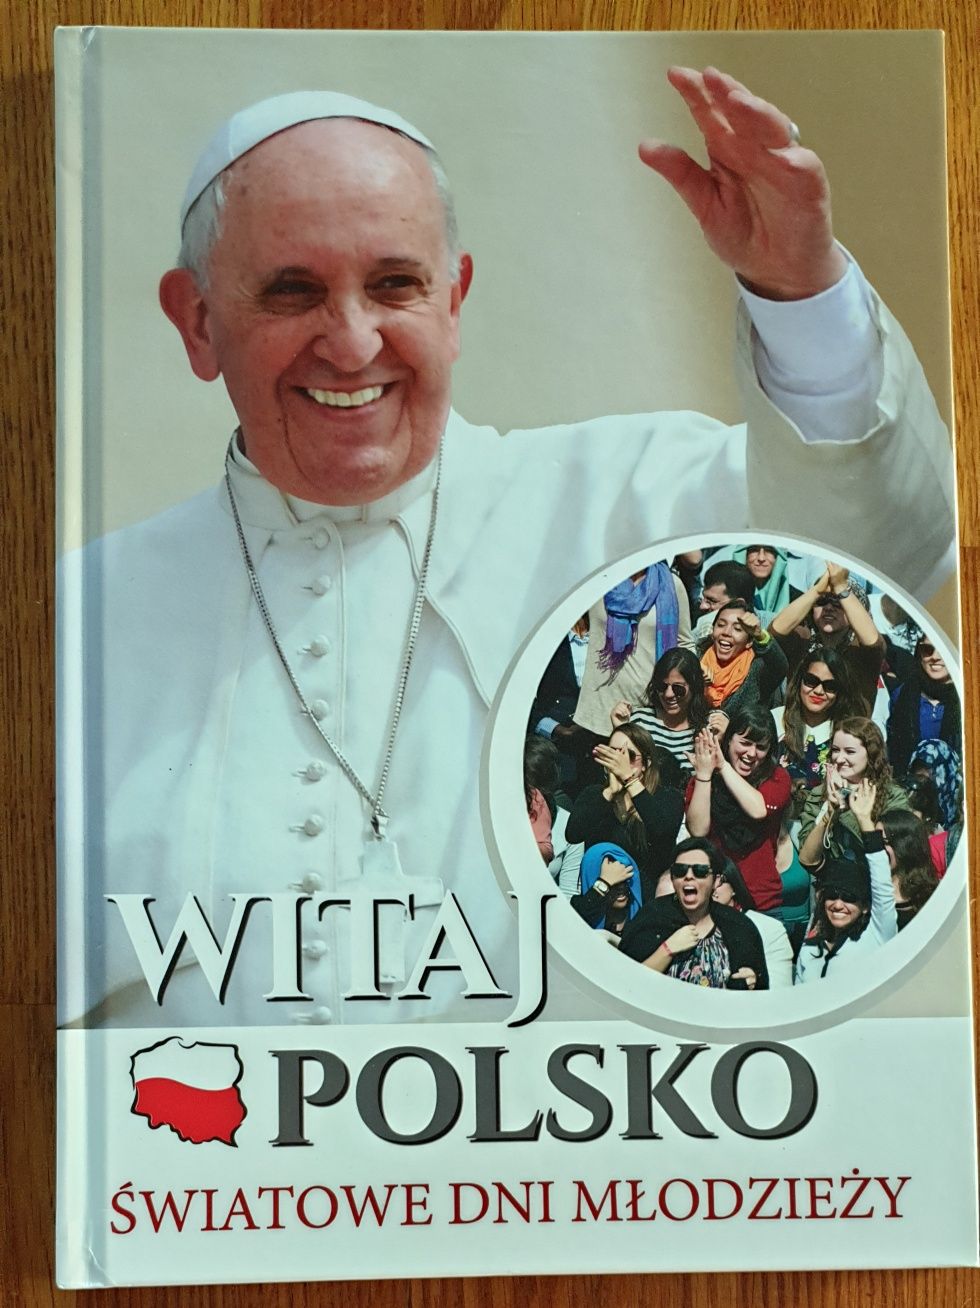 Album "Witaj Polsko. Światowe Dni Młodzieży"